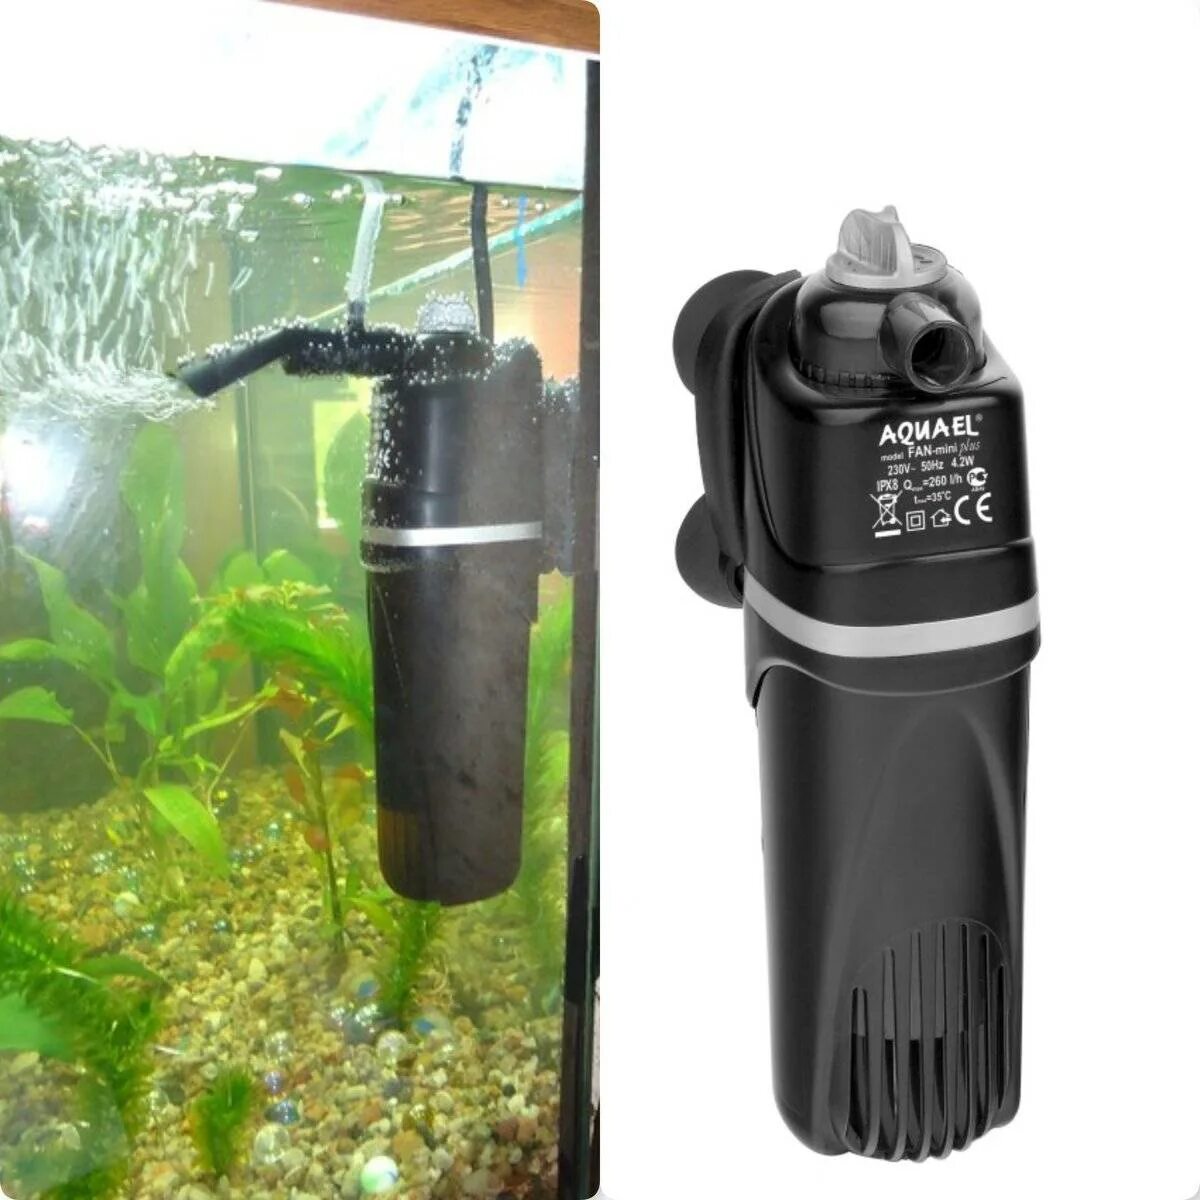 Внешний фильтр Aquael для аквариума на 200 литров. Компрессор аквариумный акваэль. Фильтр аквариумный внешний dophh 700. Aquael Fan Mini Plus. Можно ли отключать фильтр в аквариуме